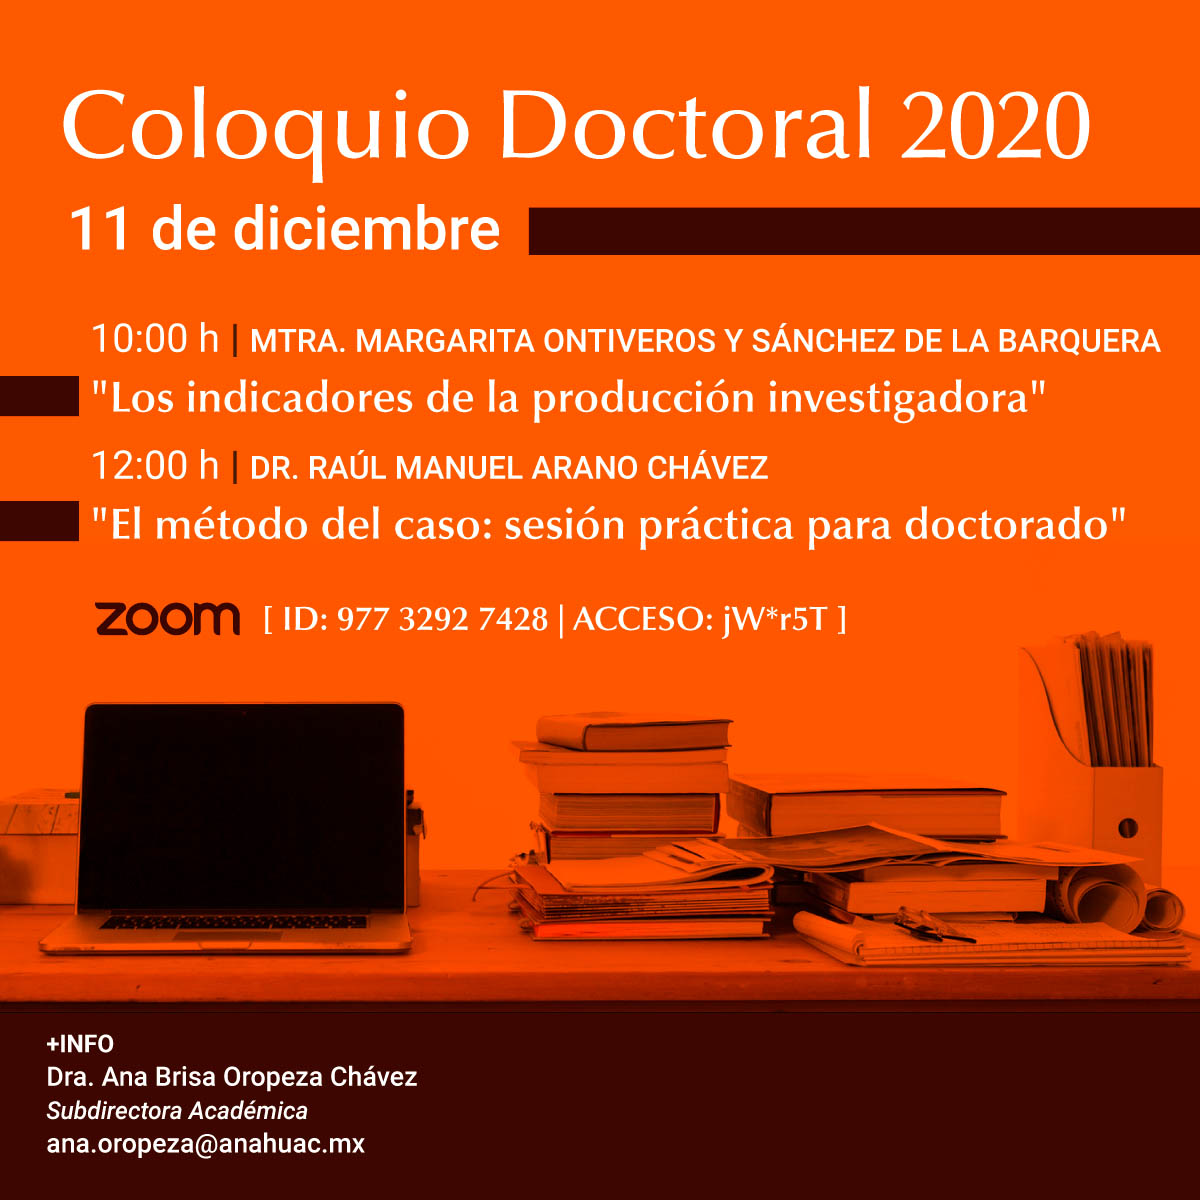 Coloquio Doctoral 2020